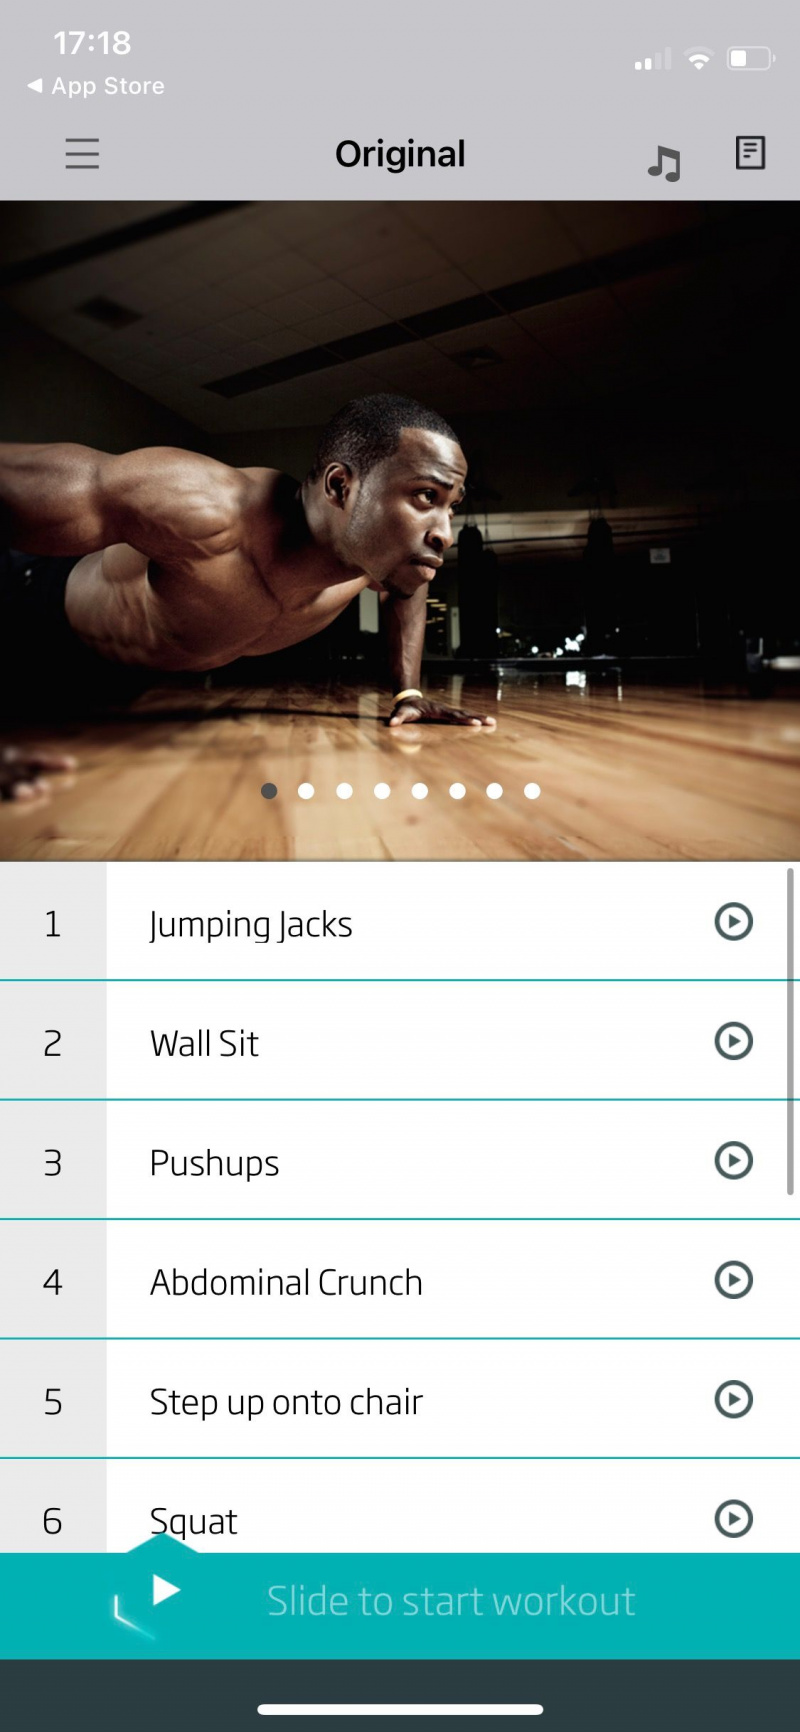   Snimka zaslona 7-minutnog vježbanja od strane C25K prikazuje izvorni program vježbanja